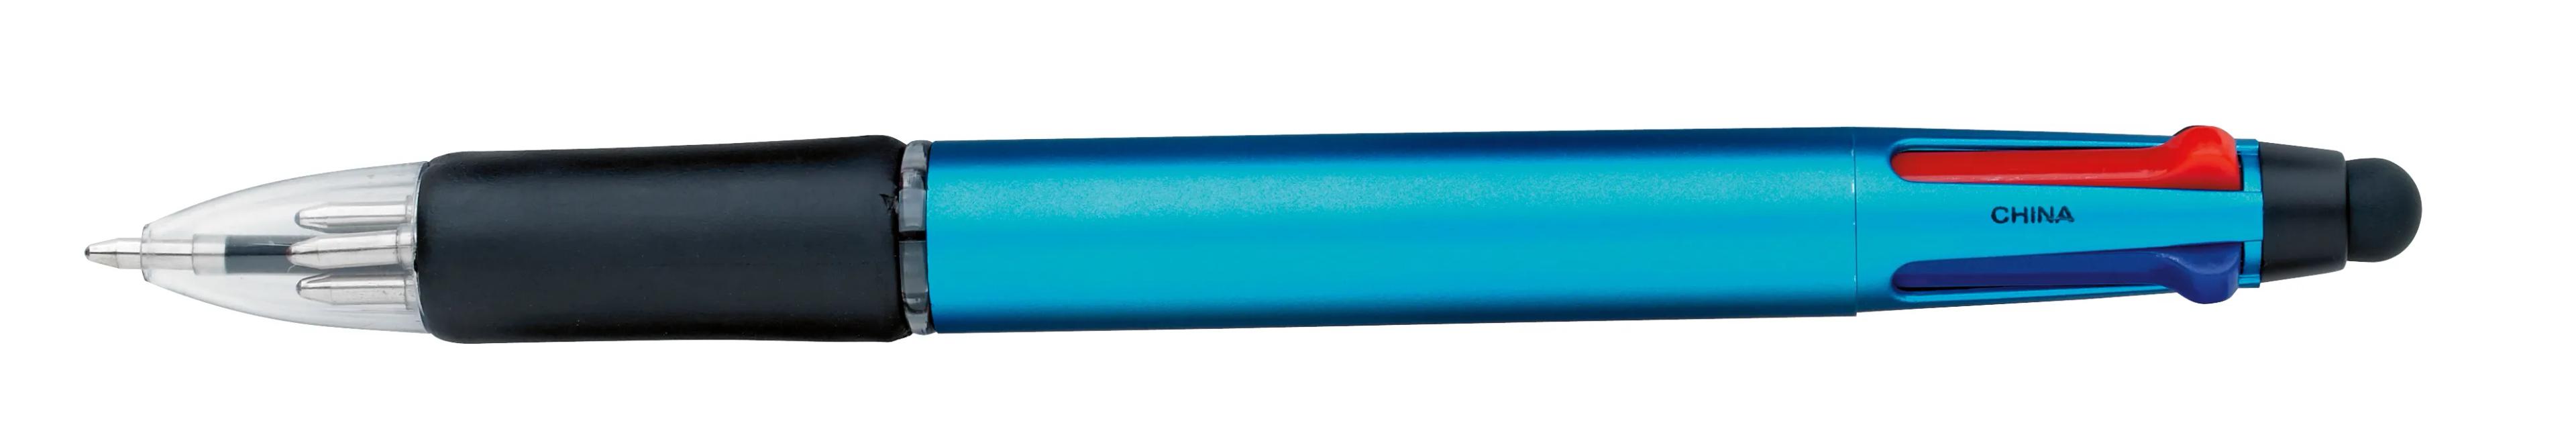 Orbitor Metallic Stylus Pen 30 of 56